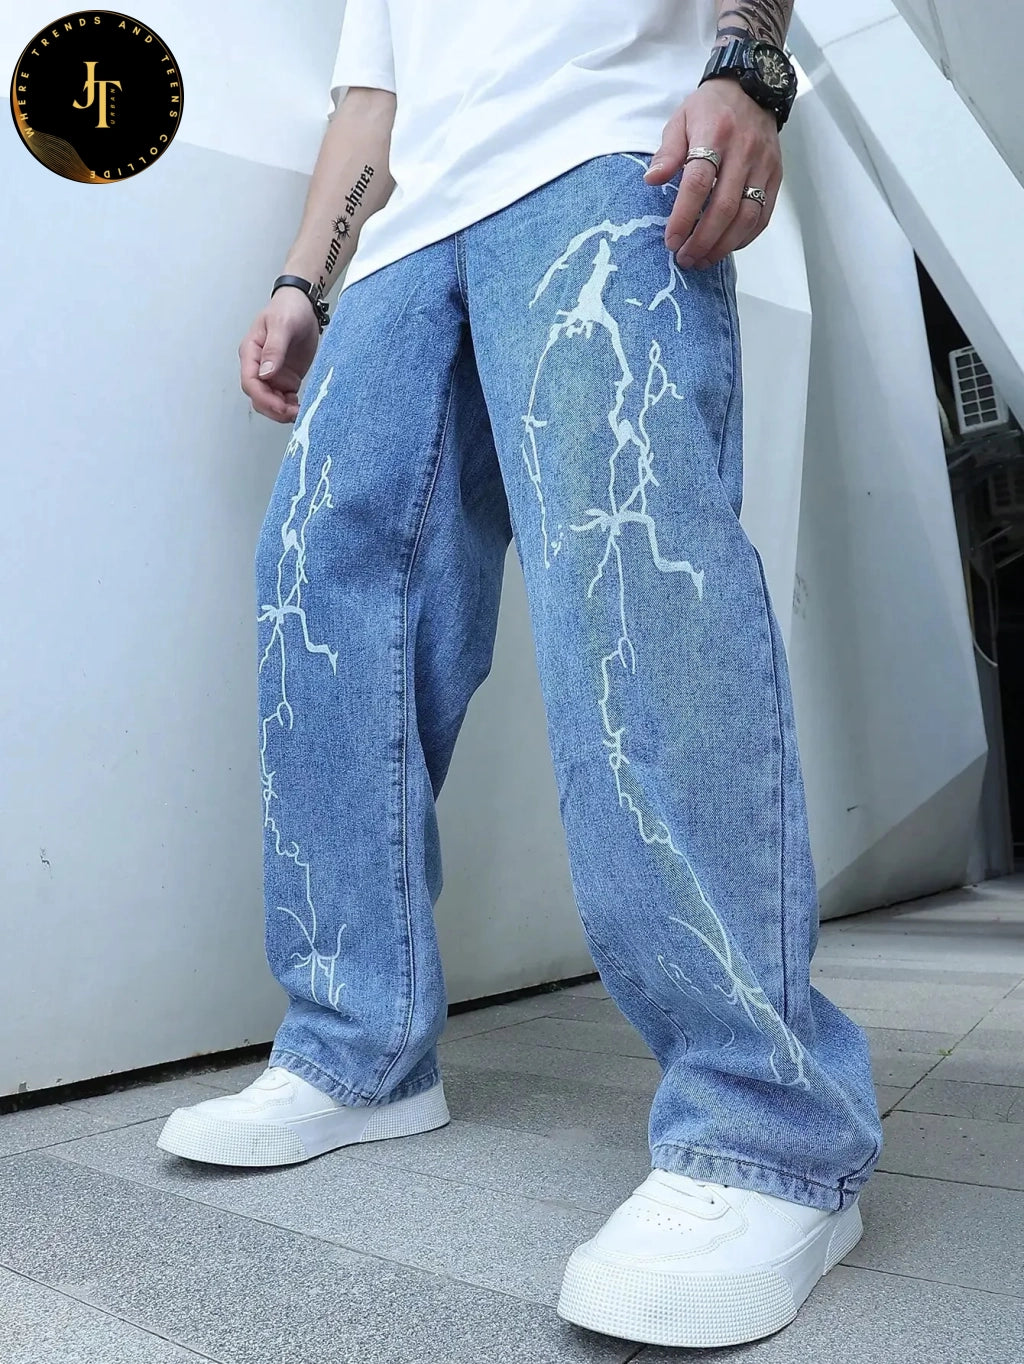 Stylish Men's Graffiti Print Jeans - Unique Hip Hop Style